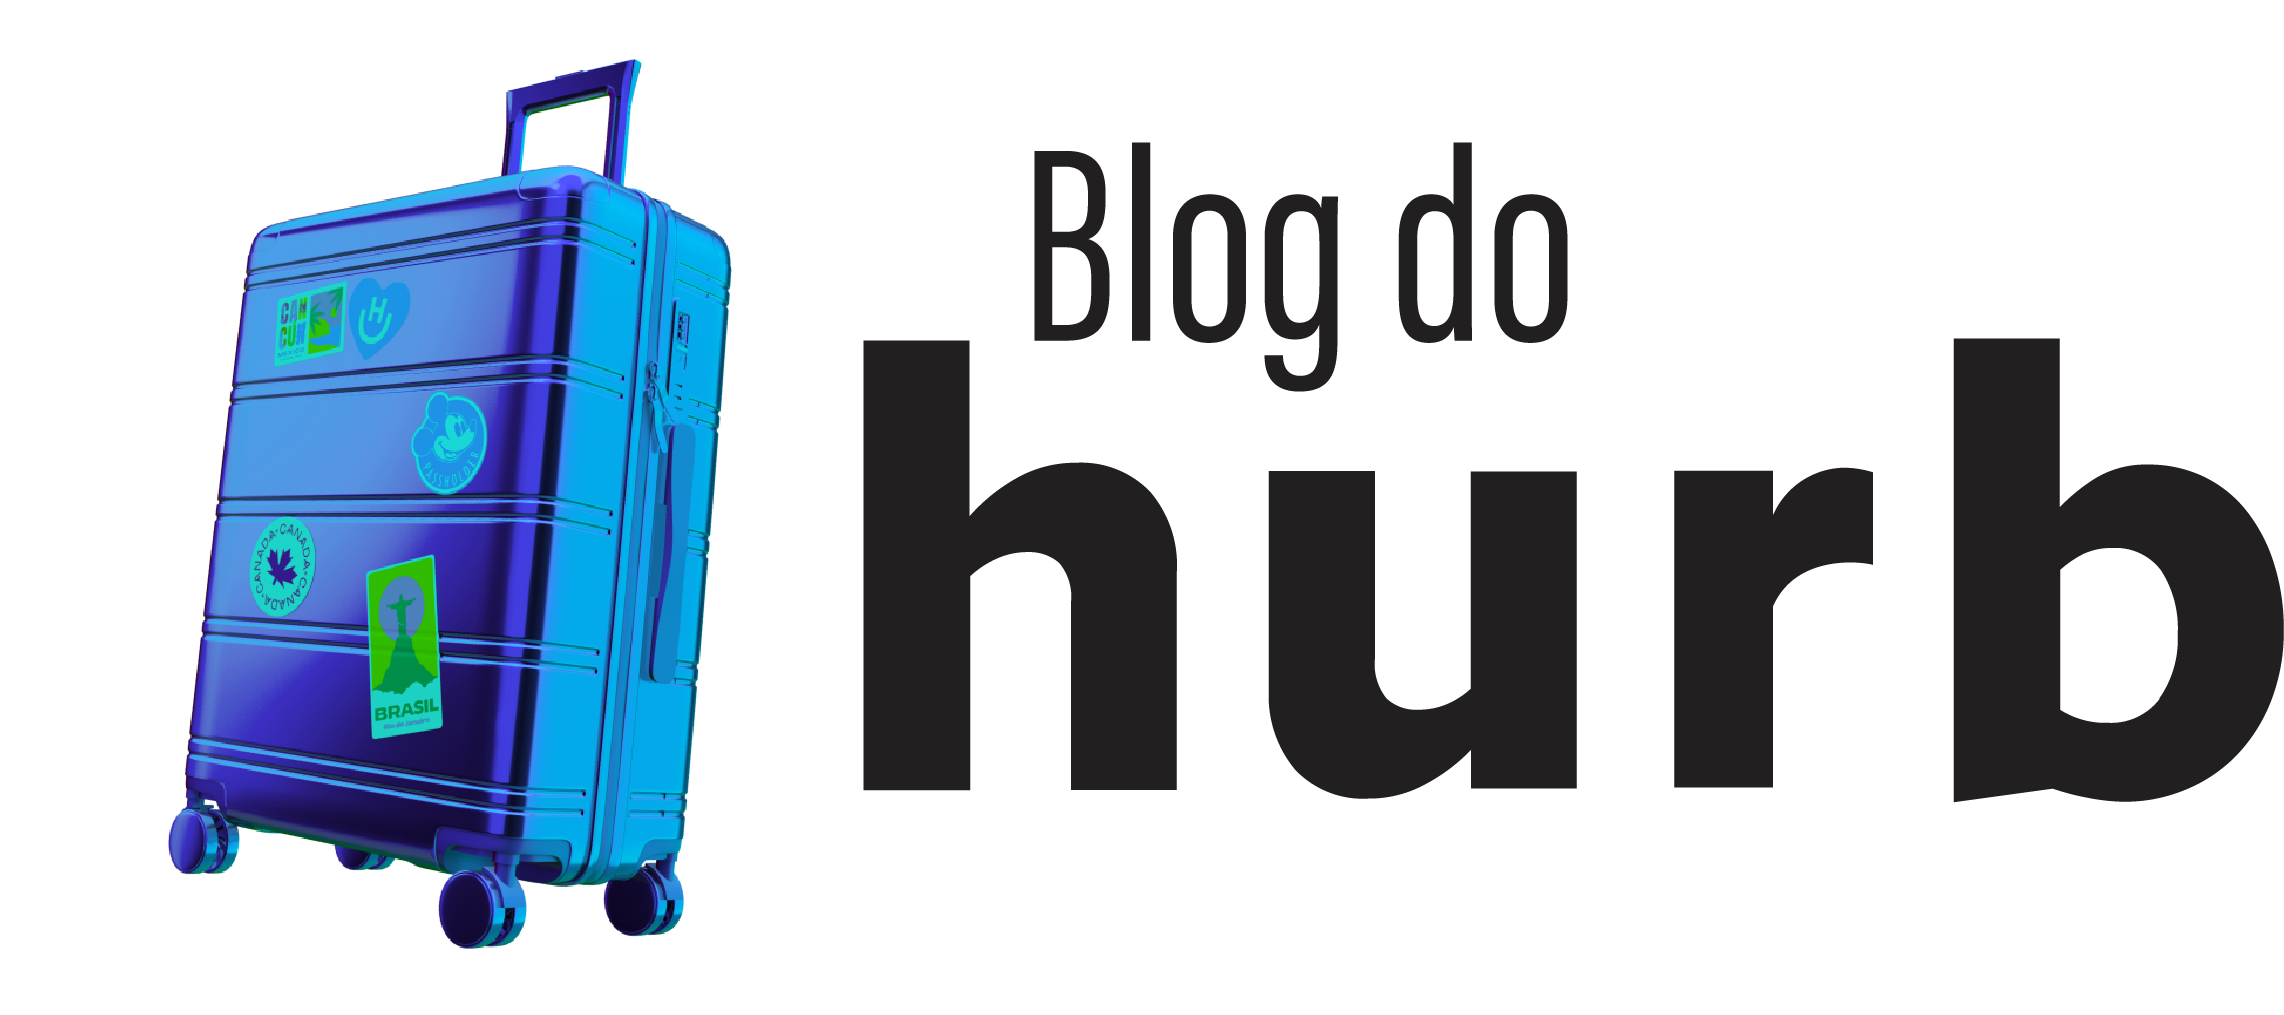 Blog do Hurb